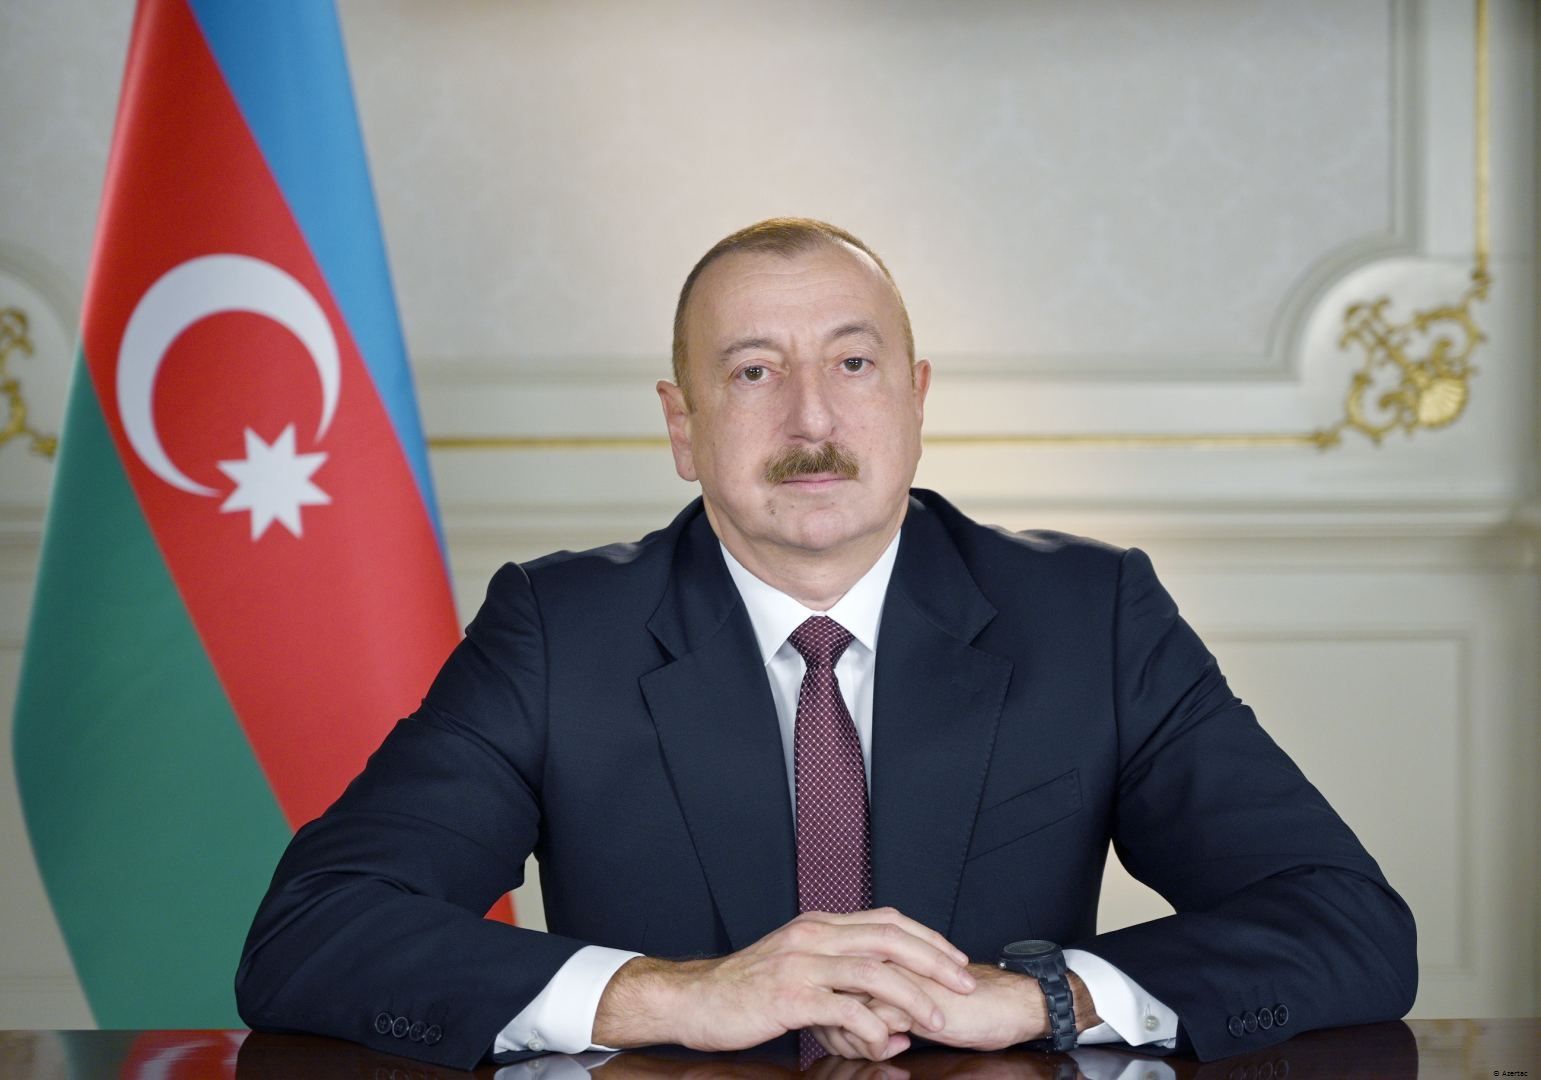 Le président Ilham Aliyev a accordé une interview à Dmitri Kisselev pour l’agence russe Ria Novosti